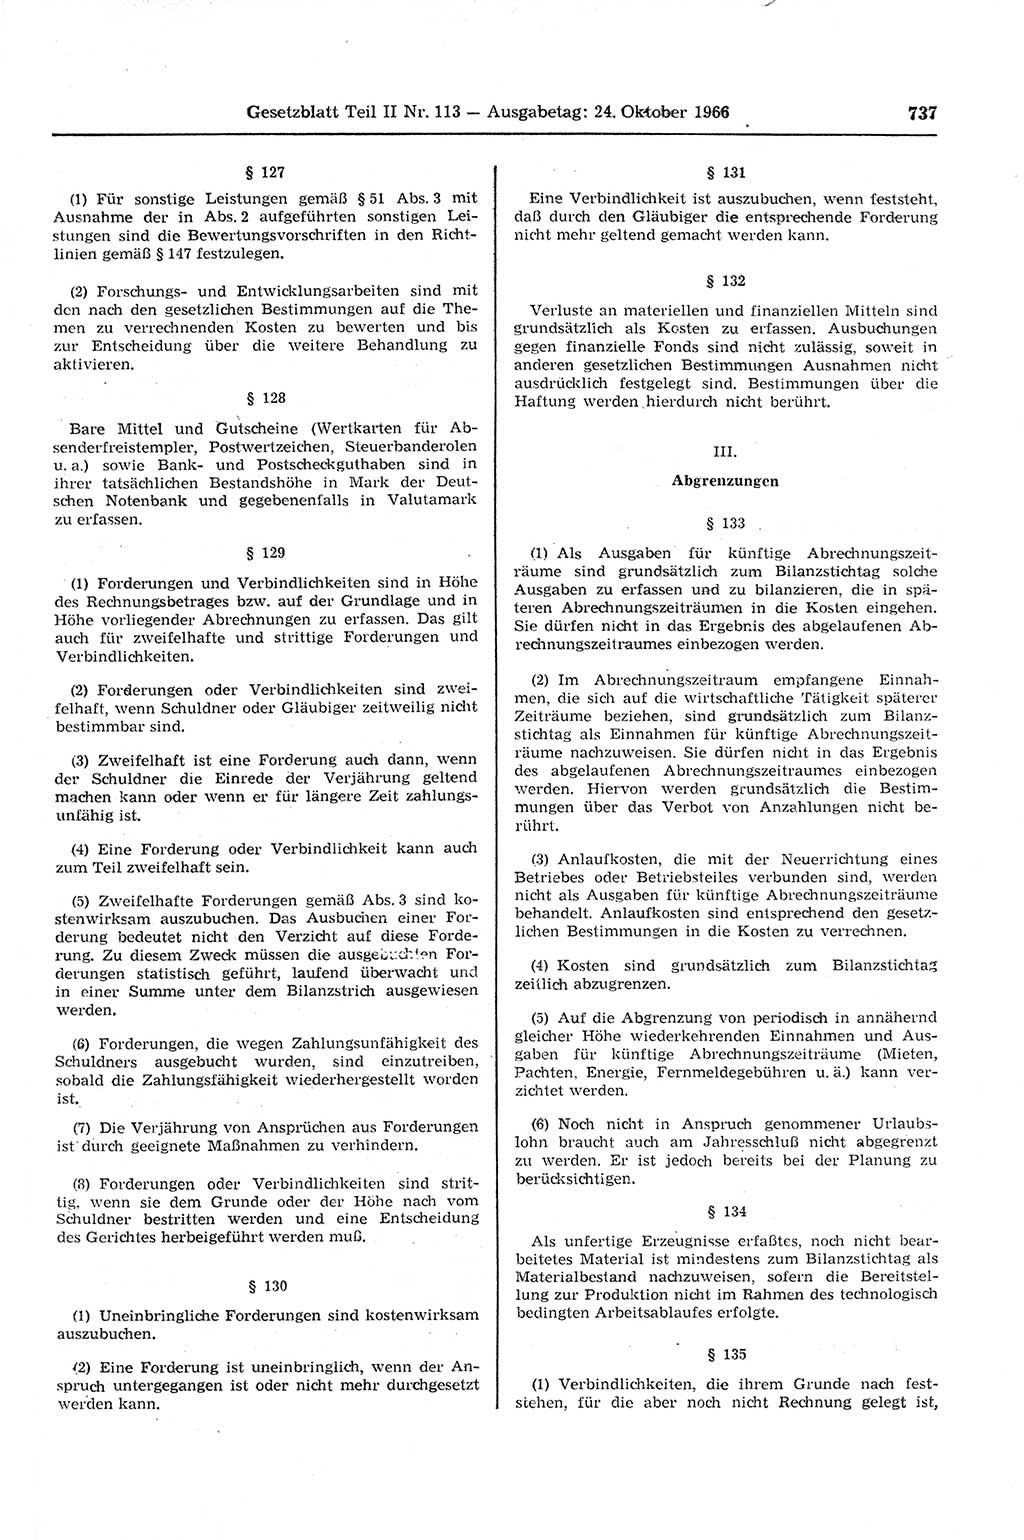 Gesetzblatt (GBl.) der Deutschen Demokratischen Republik (DDR) Teil ⅠⅠ 1966, Seite 737 (GBl. DDR ⅠⅠ 1966, S. 737)